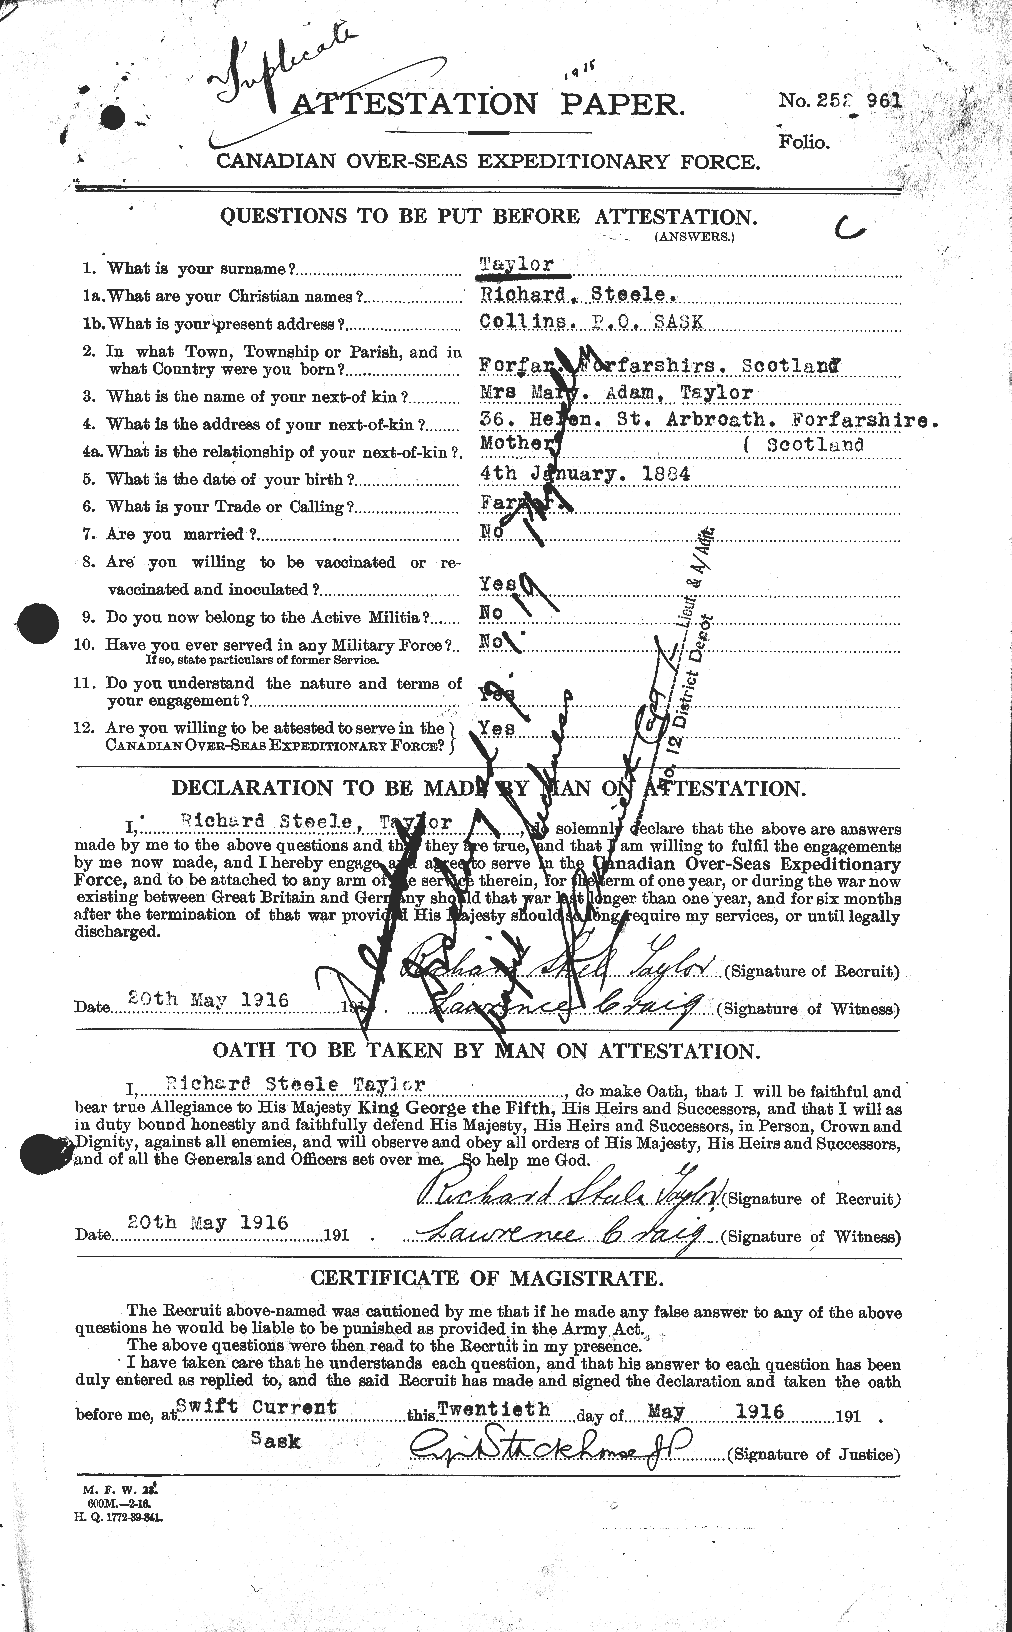 Dossiers du Personnel de la Première Guerre mondiale - CEC 627421a